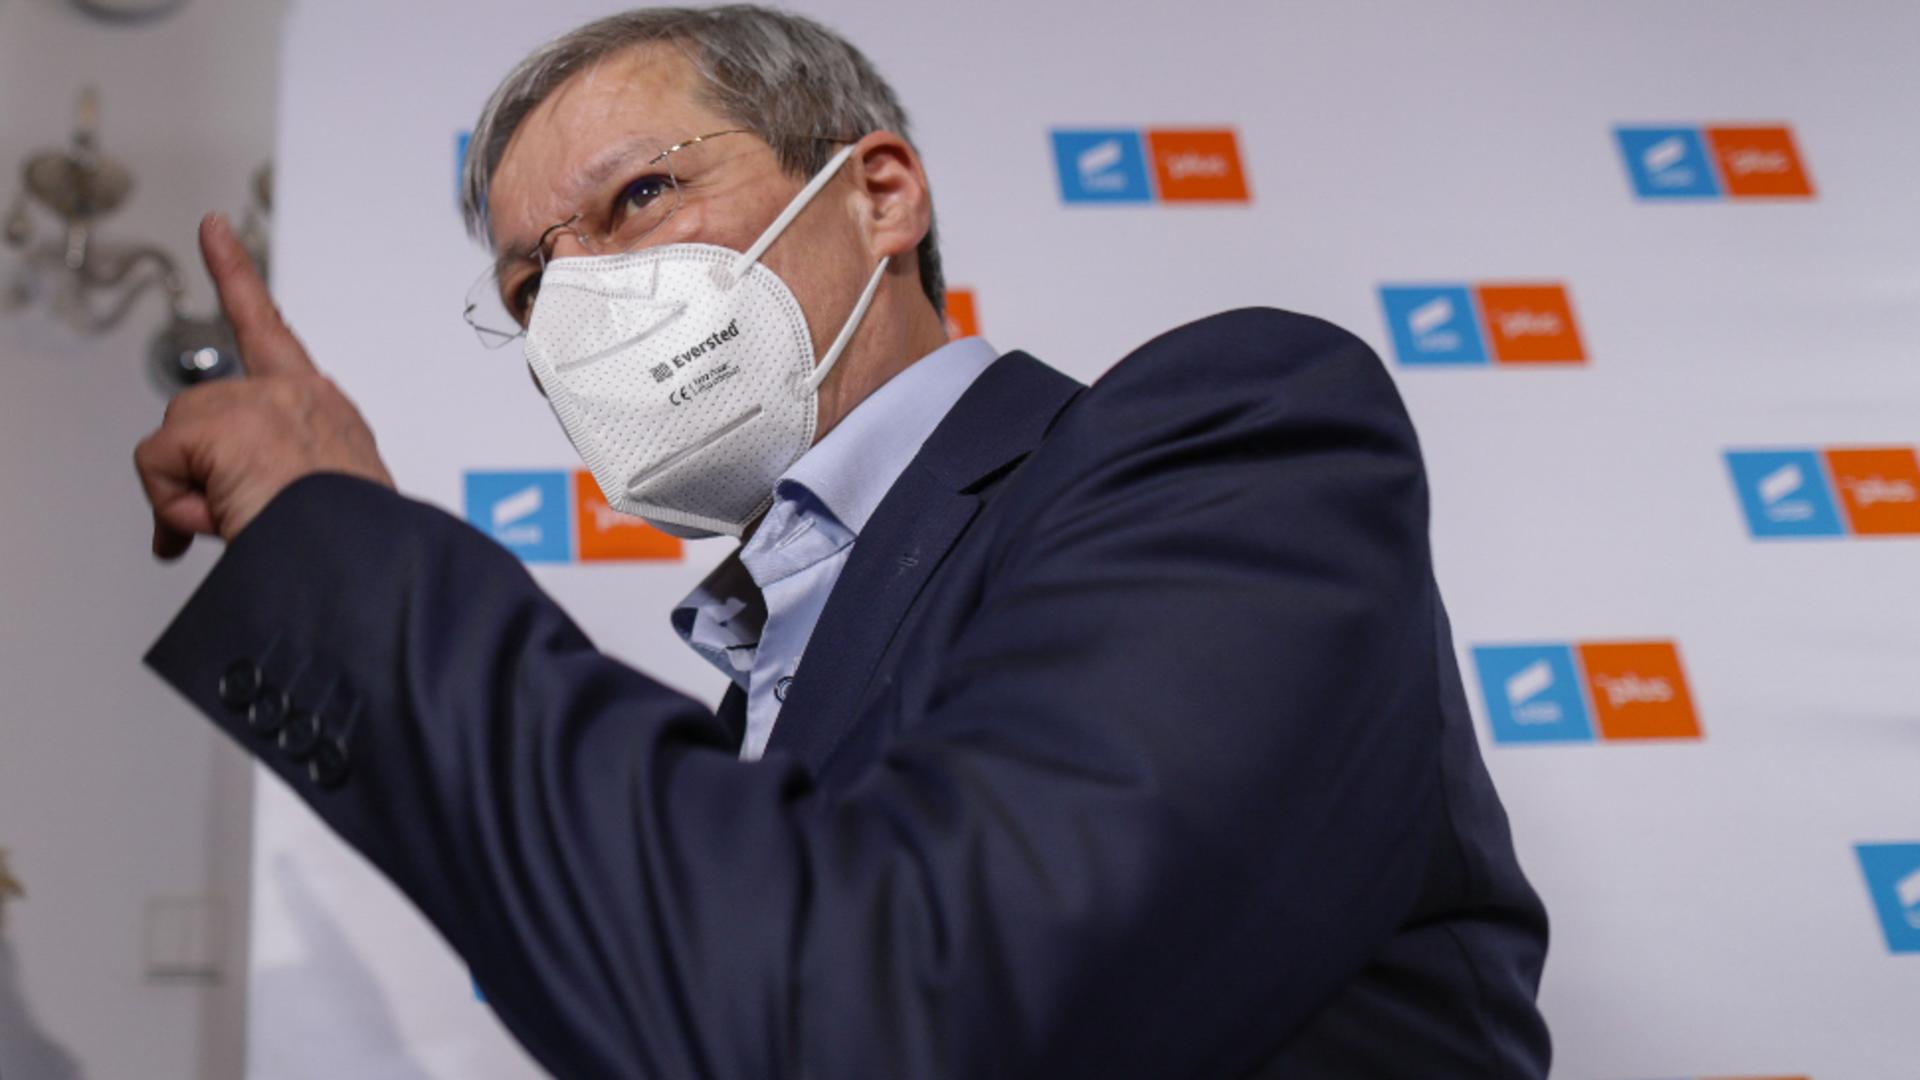 Cioloș, atac la noul șef al USR. Foto/Inquam/Octav/Ganea